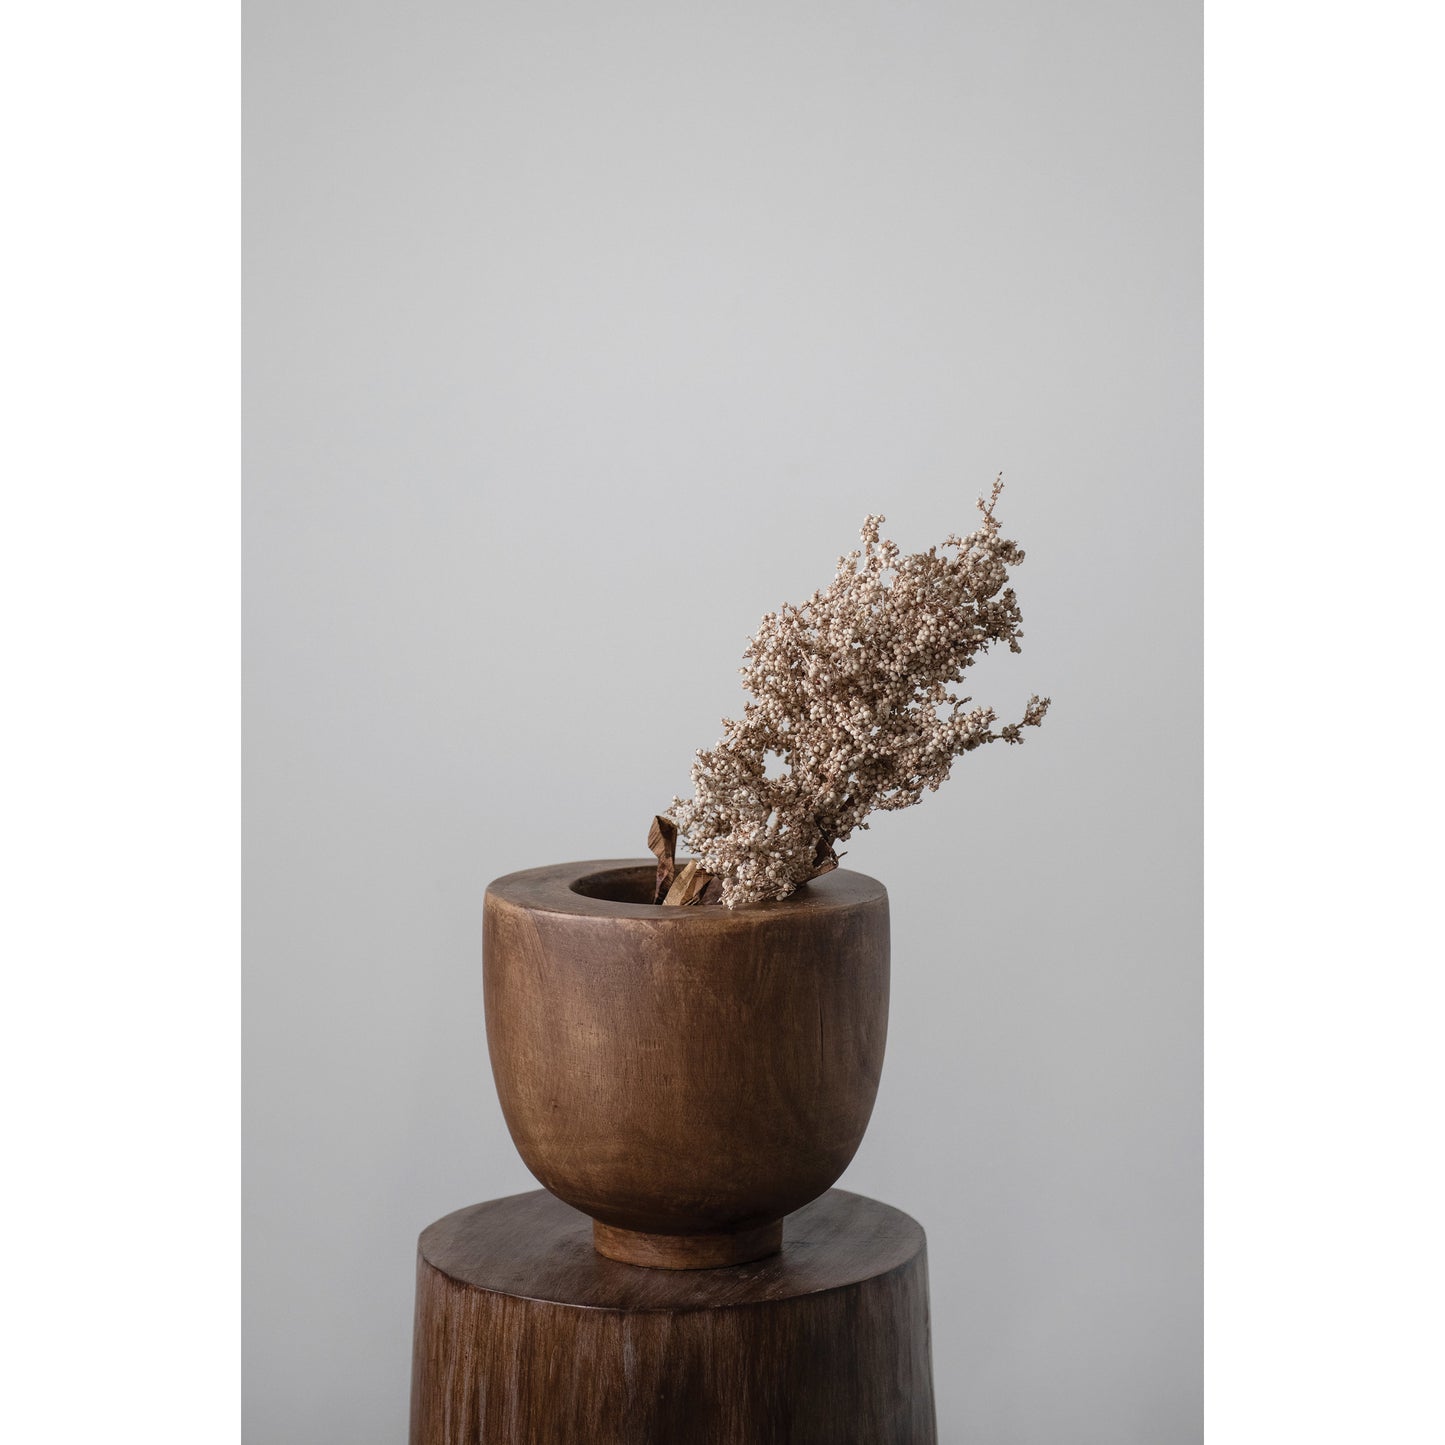 Decorative Paulownia Wood Bowl/ vase Stained Finish